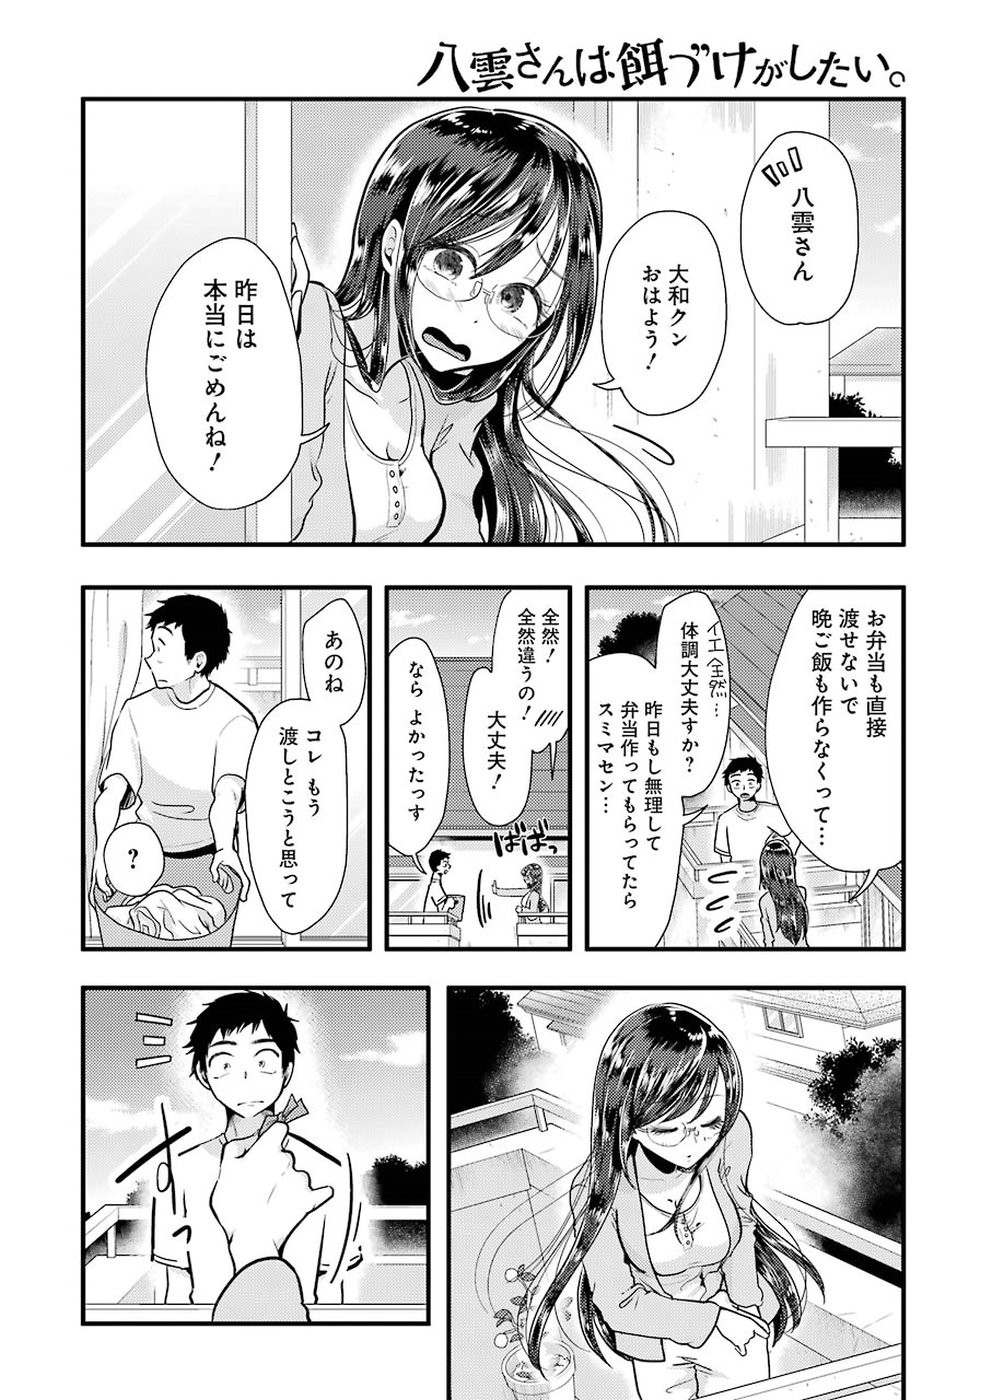 Yakumo-san wa Edzuke ga Shitai. - Chapter 054 - Page 18